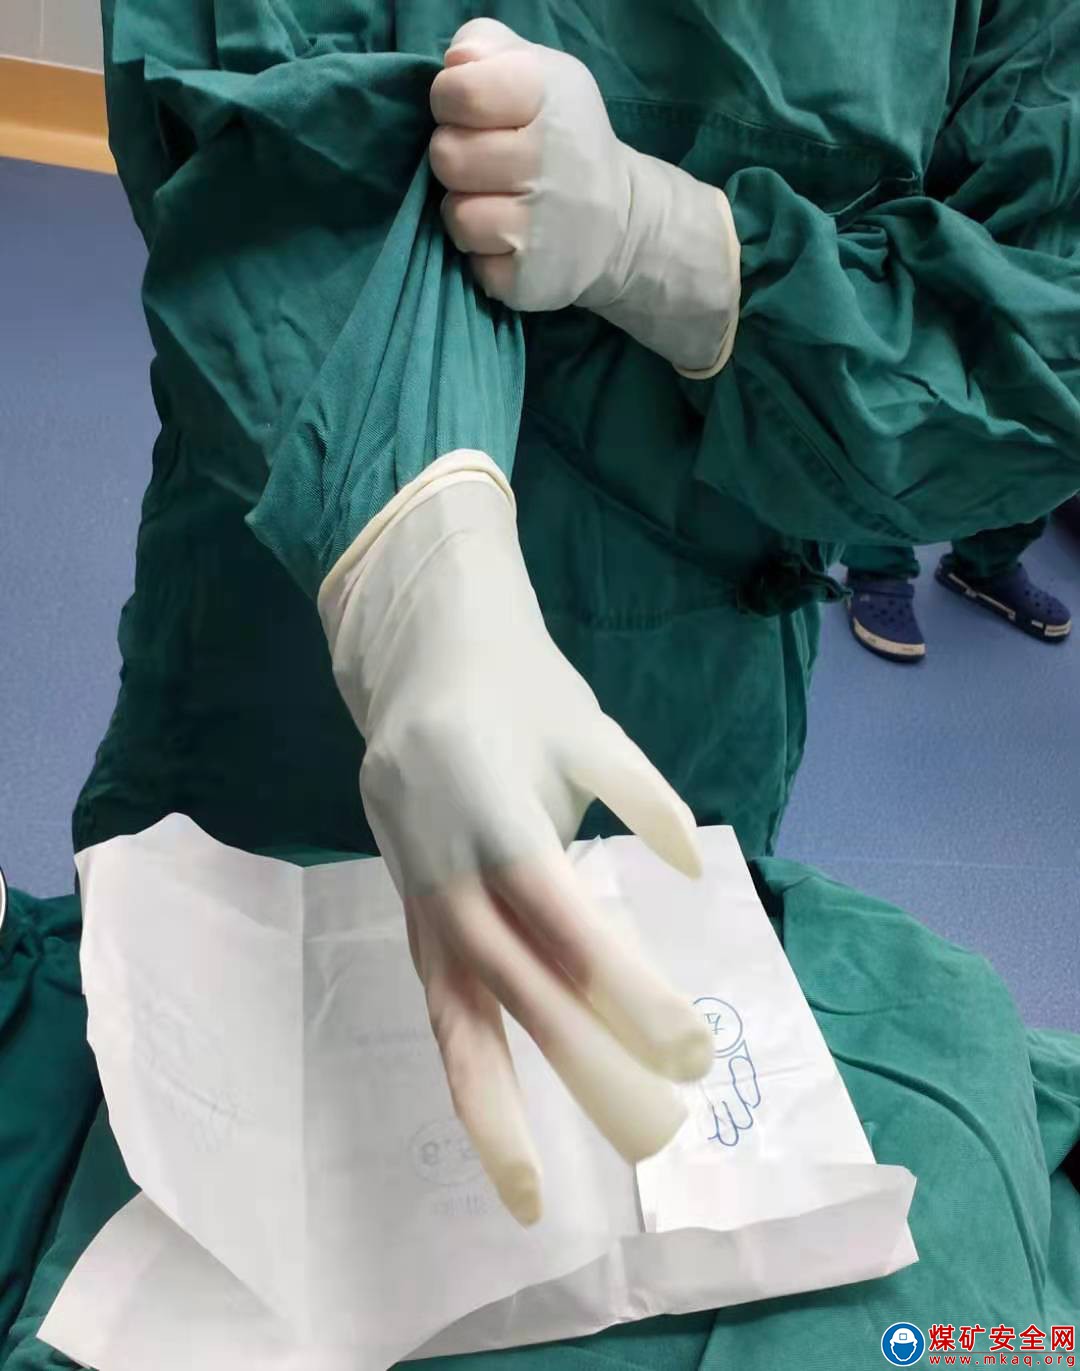 攀煤總醫院開展無接觸式戴無菌手套護理新技術